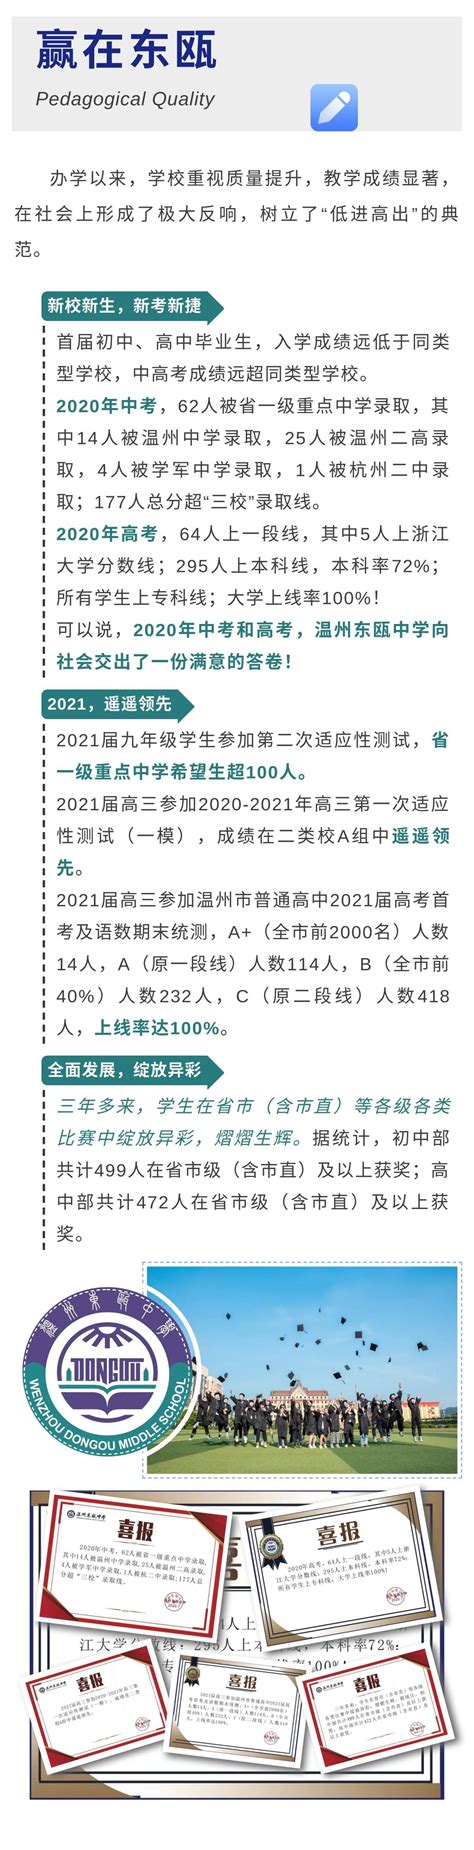 2021年温州东瓯中学初中部招生简章-招生动态-温州东瓯中学